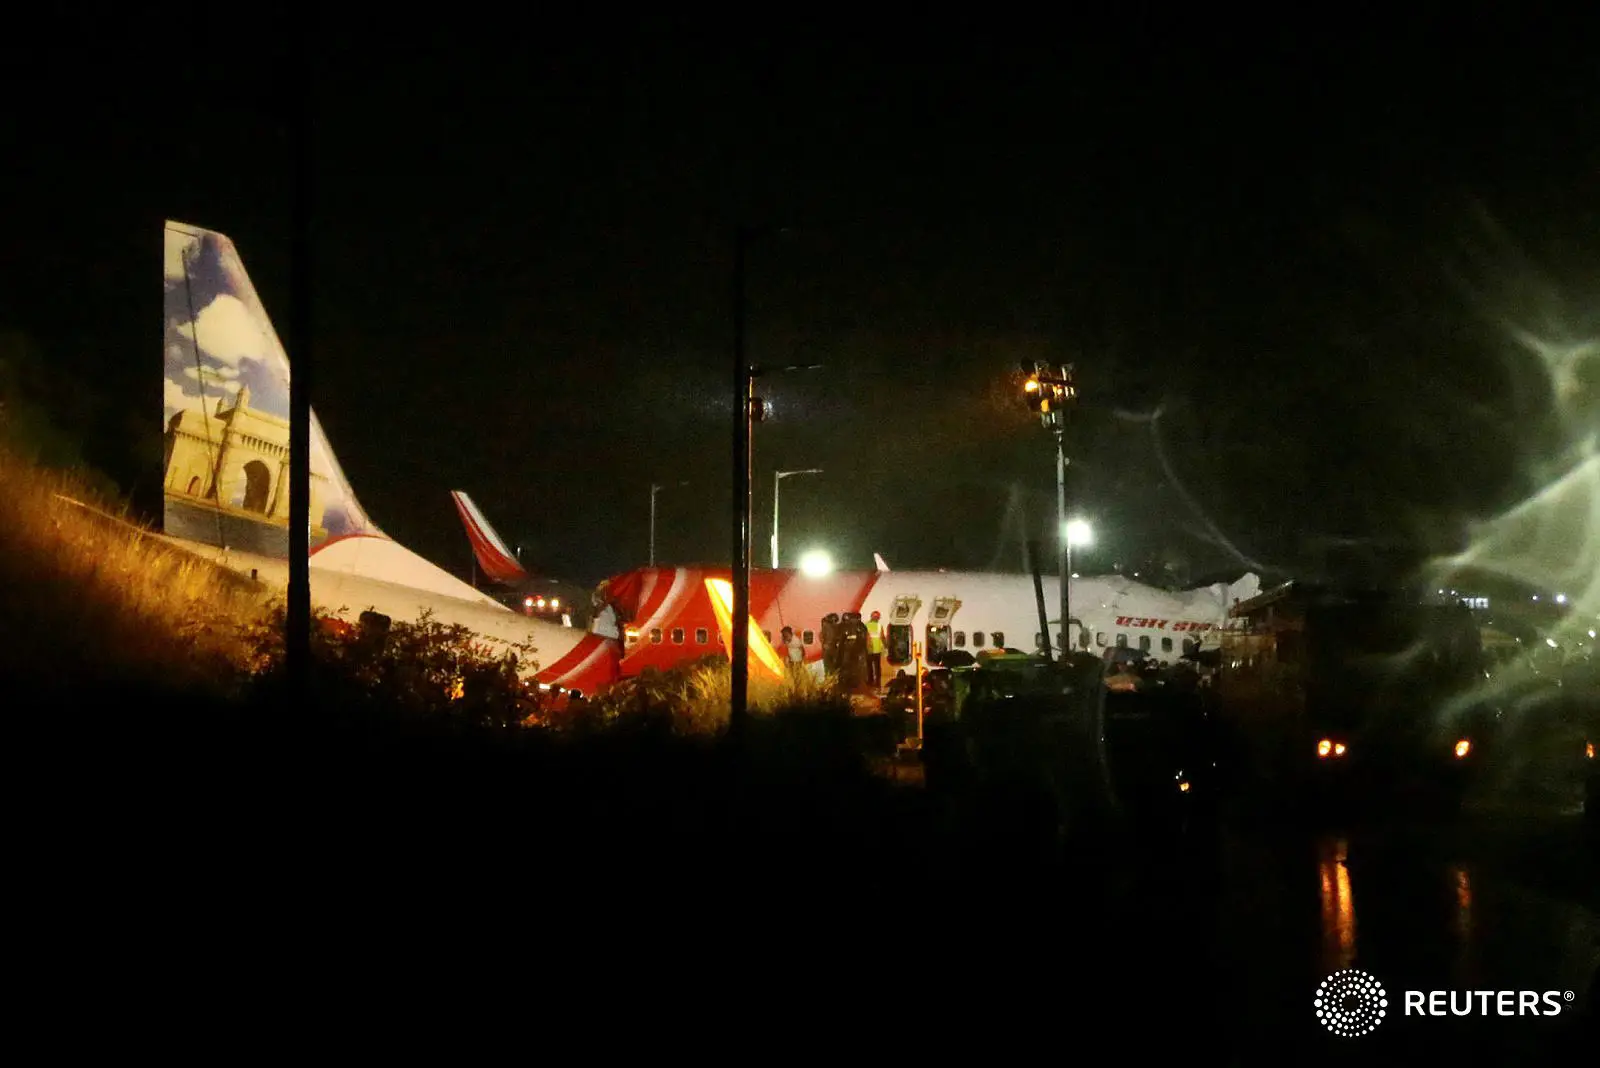 En Inde un avion sorti de piste, 14 morts et 15 blessés graves à déplorer